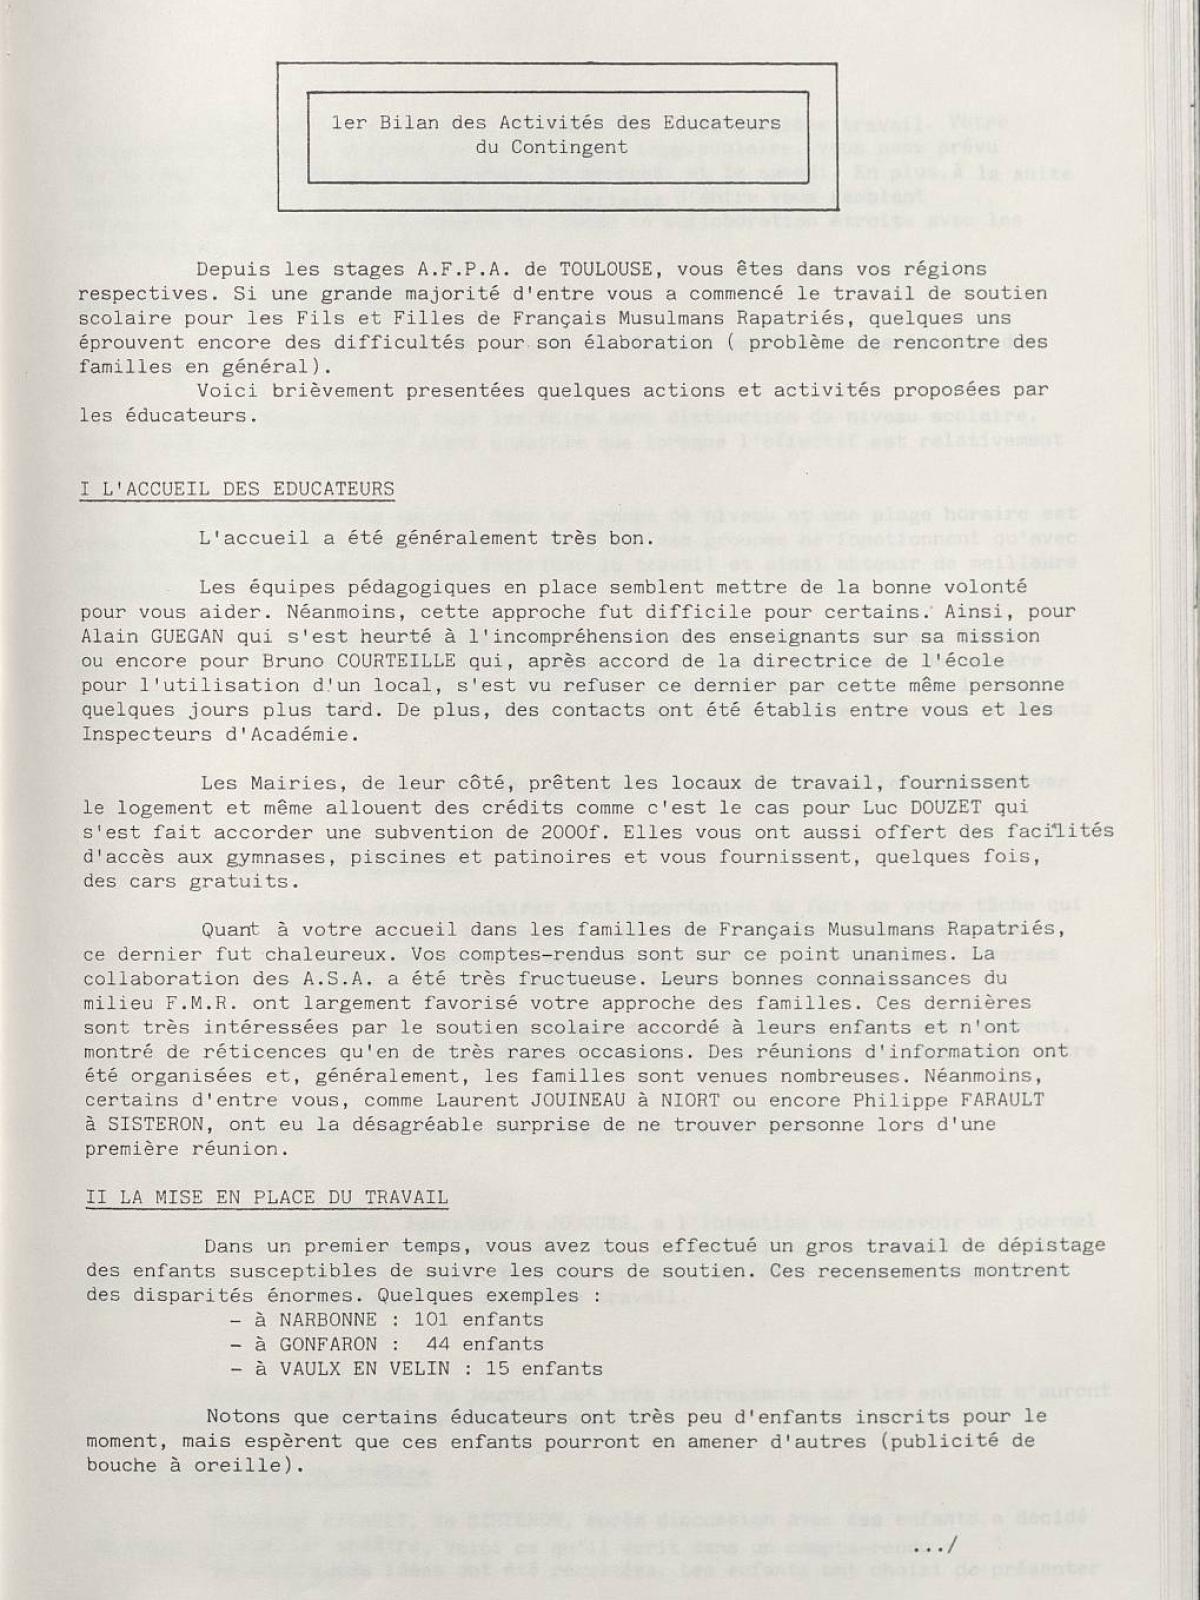 Illustration 13 : Bulletin de liaison des éducateurs (BLÉ) n°1, 15 septembre 1983 (Archives nationales, 19870444/8)